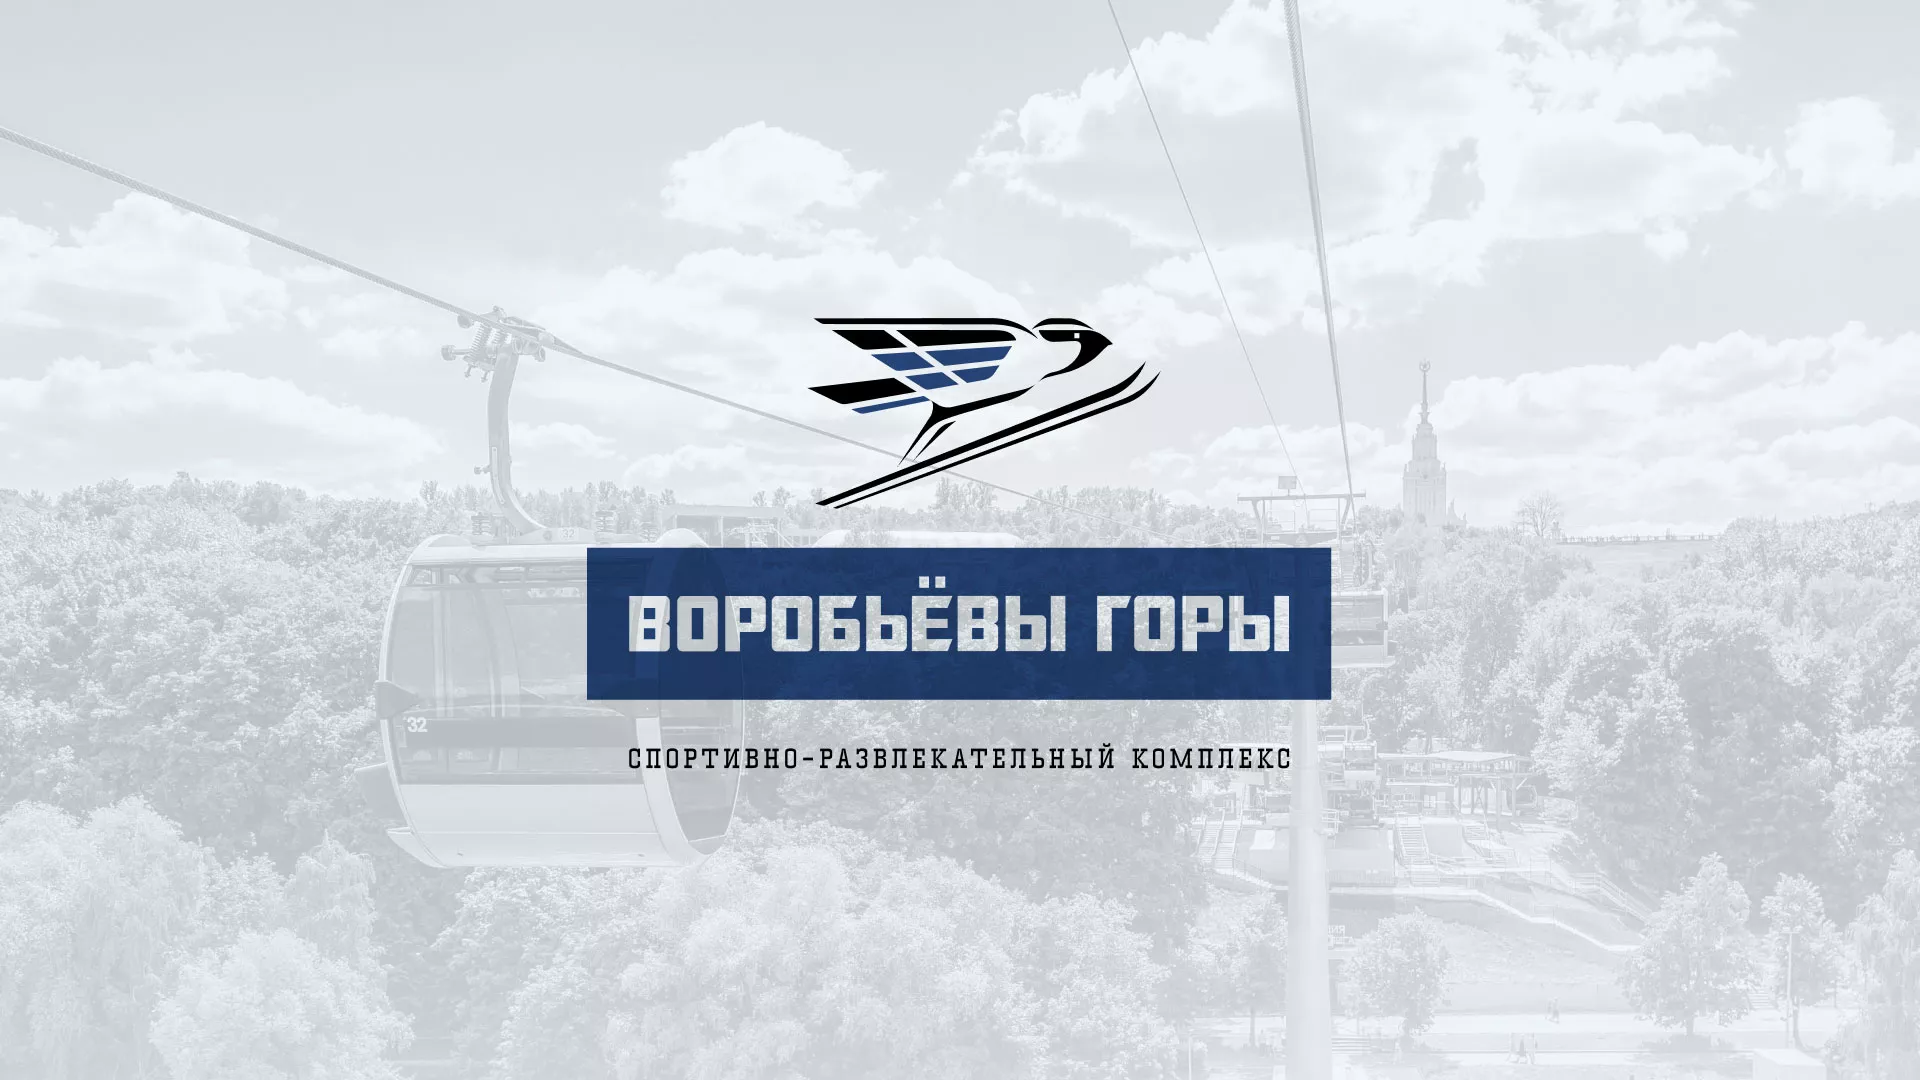 Разработка сайта в Сольвычегодске для спортивно-развлекательного комплекса «Воробьёвы горы»